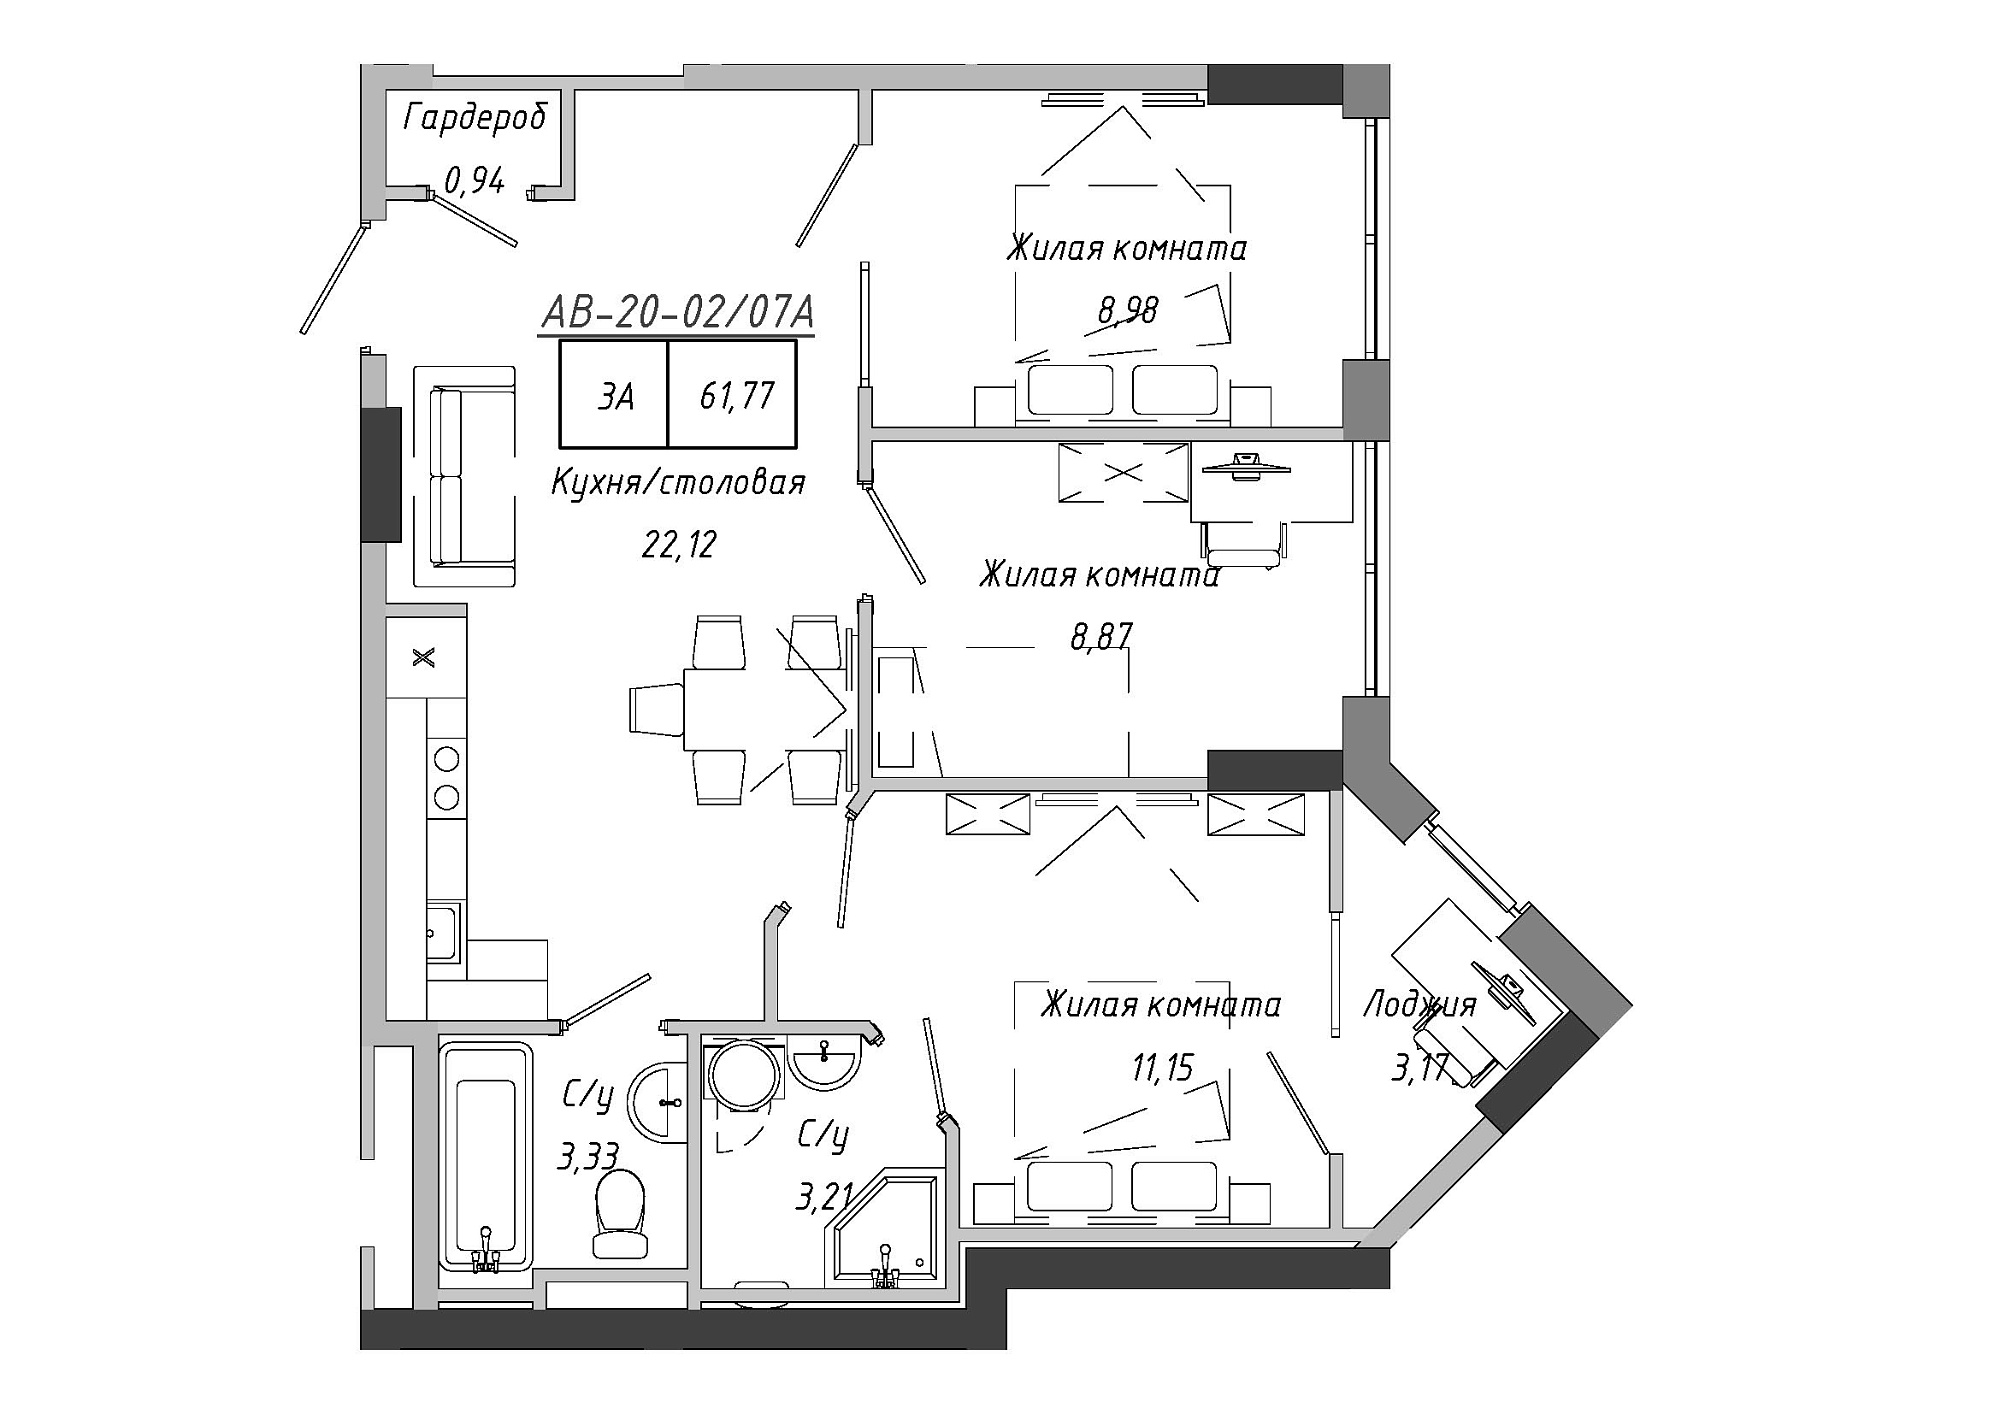 Планування 3-к квартира площею 61.77м2, AB-20-02/0007а.